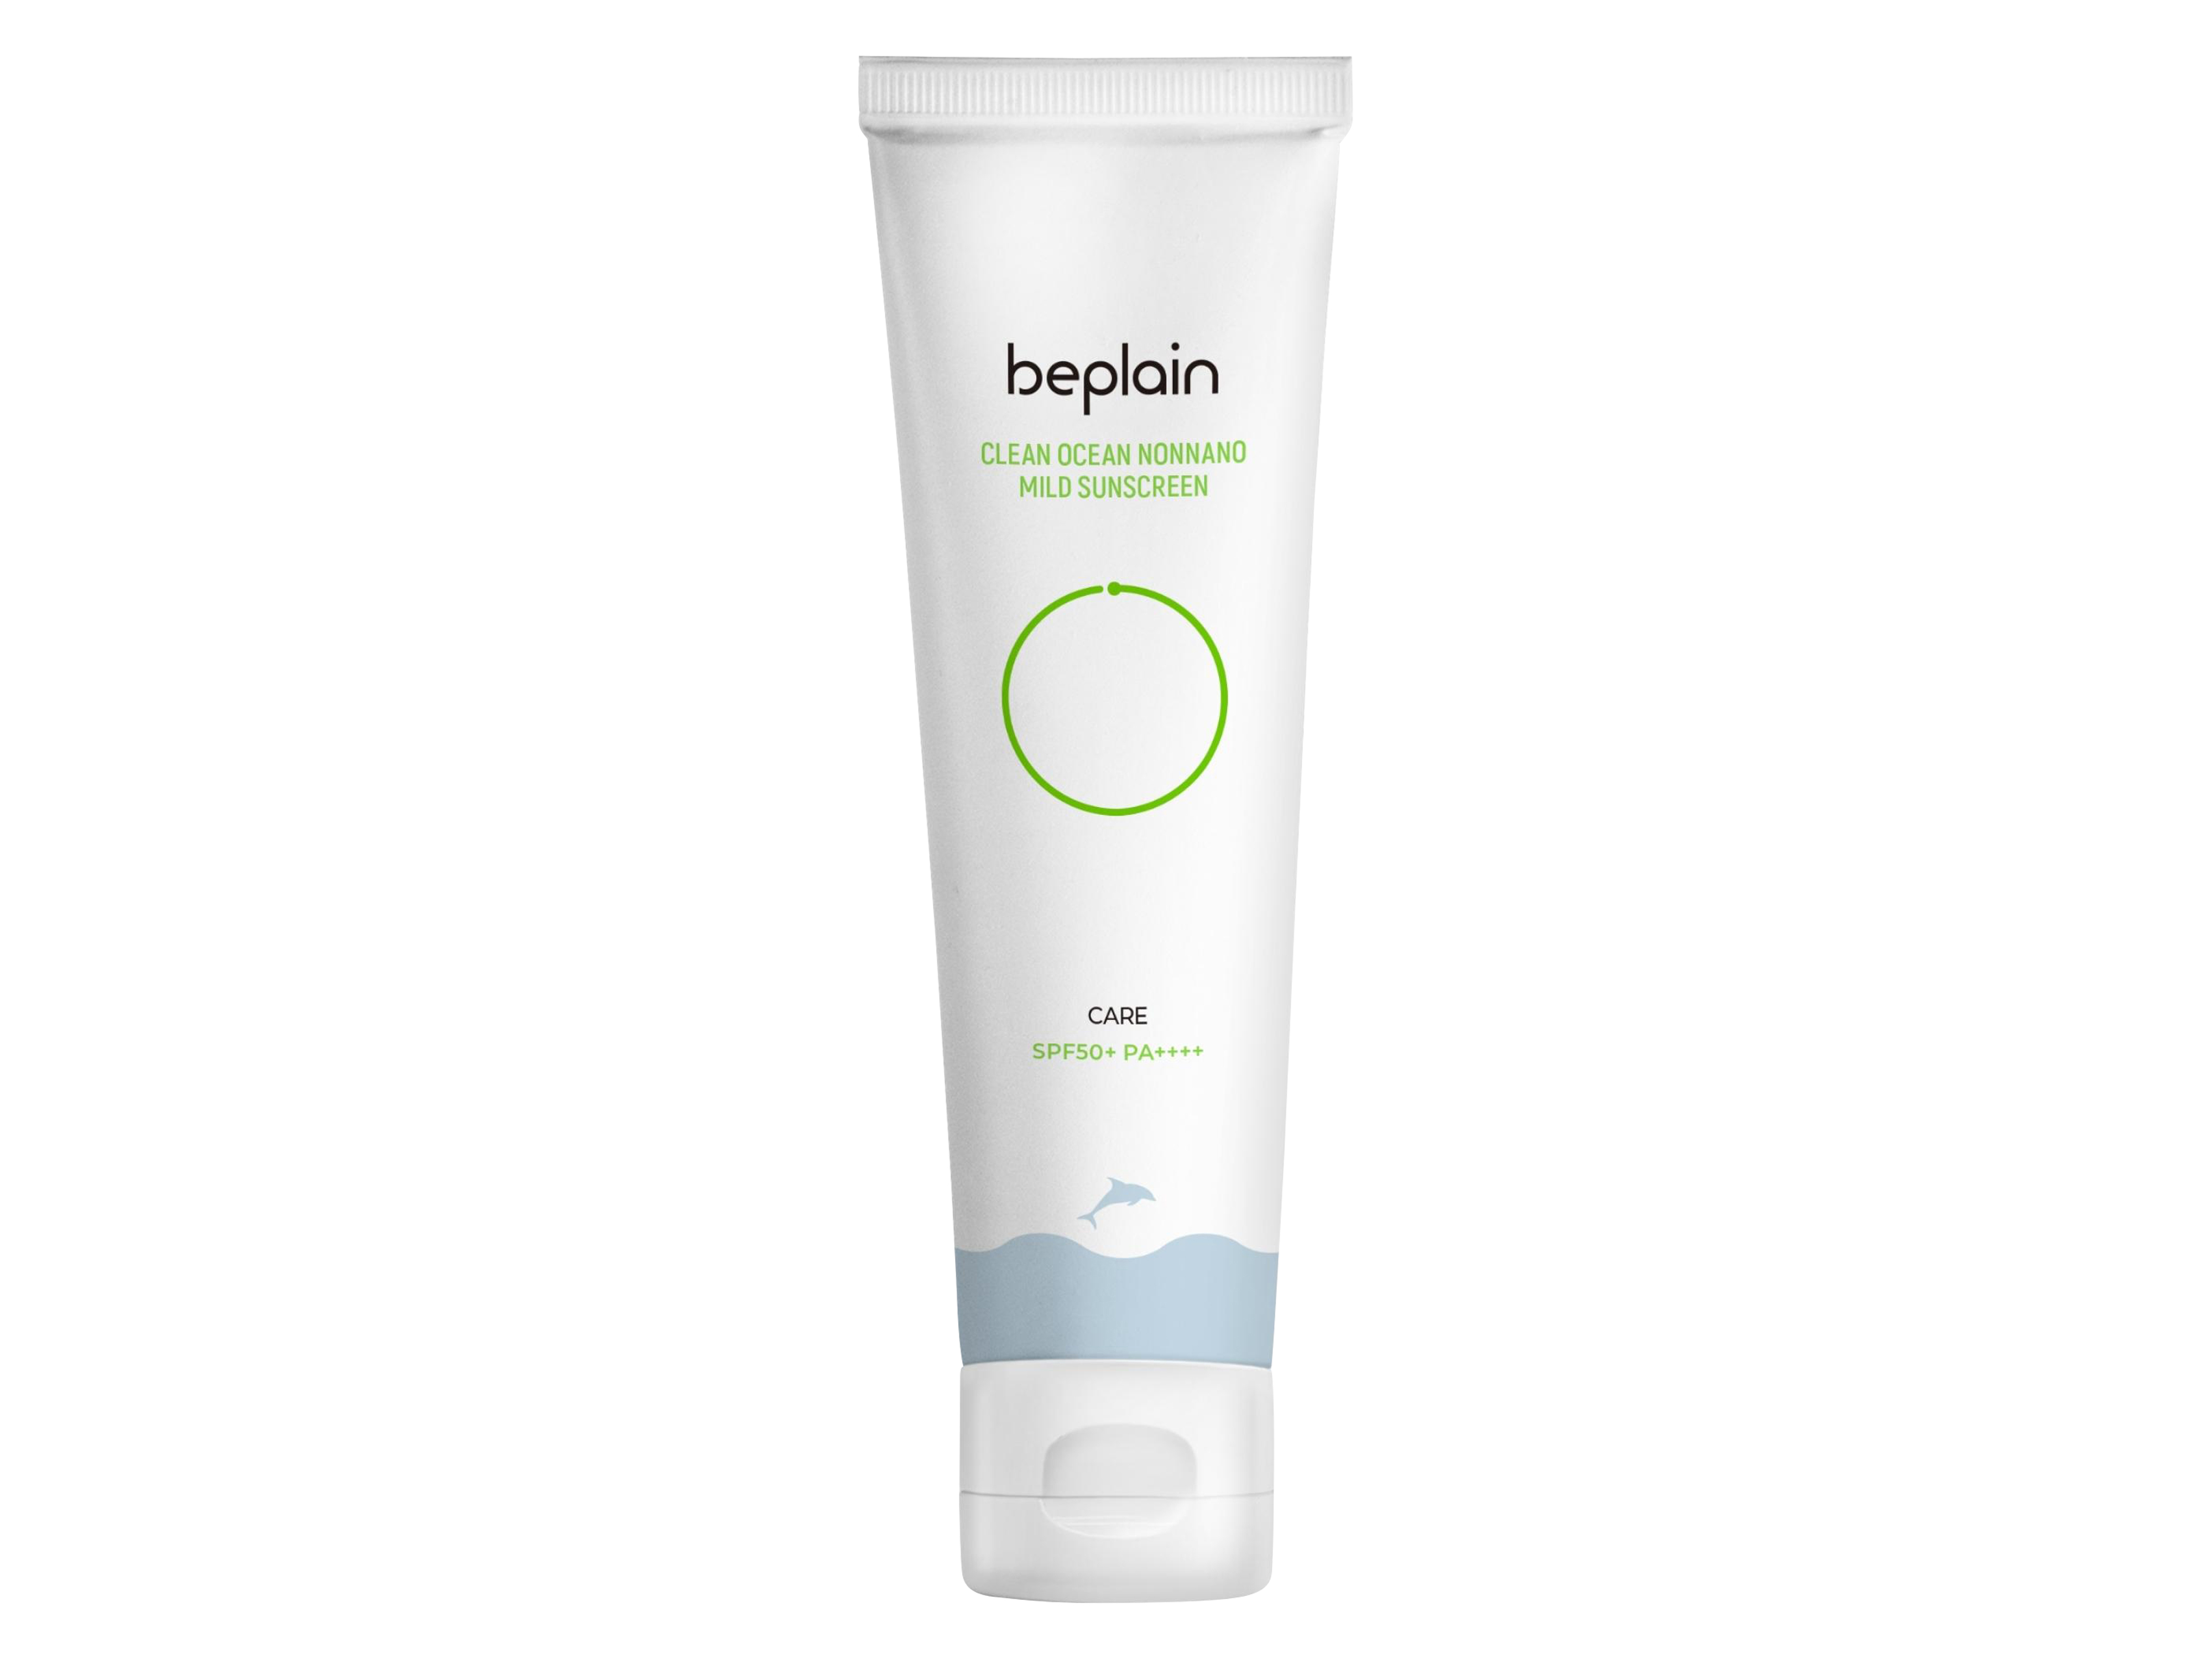 Beplain Clean Ocean Nonnano Mild Sunscreen SPF50+ PA++++, 50 ml